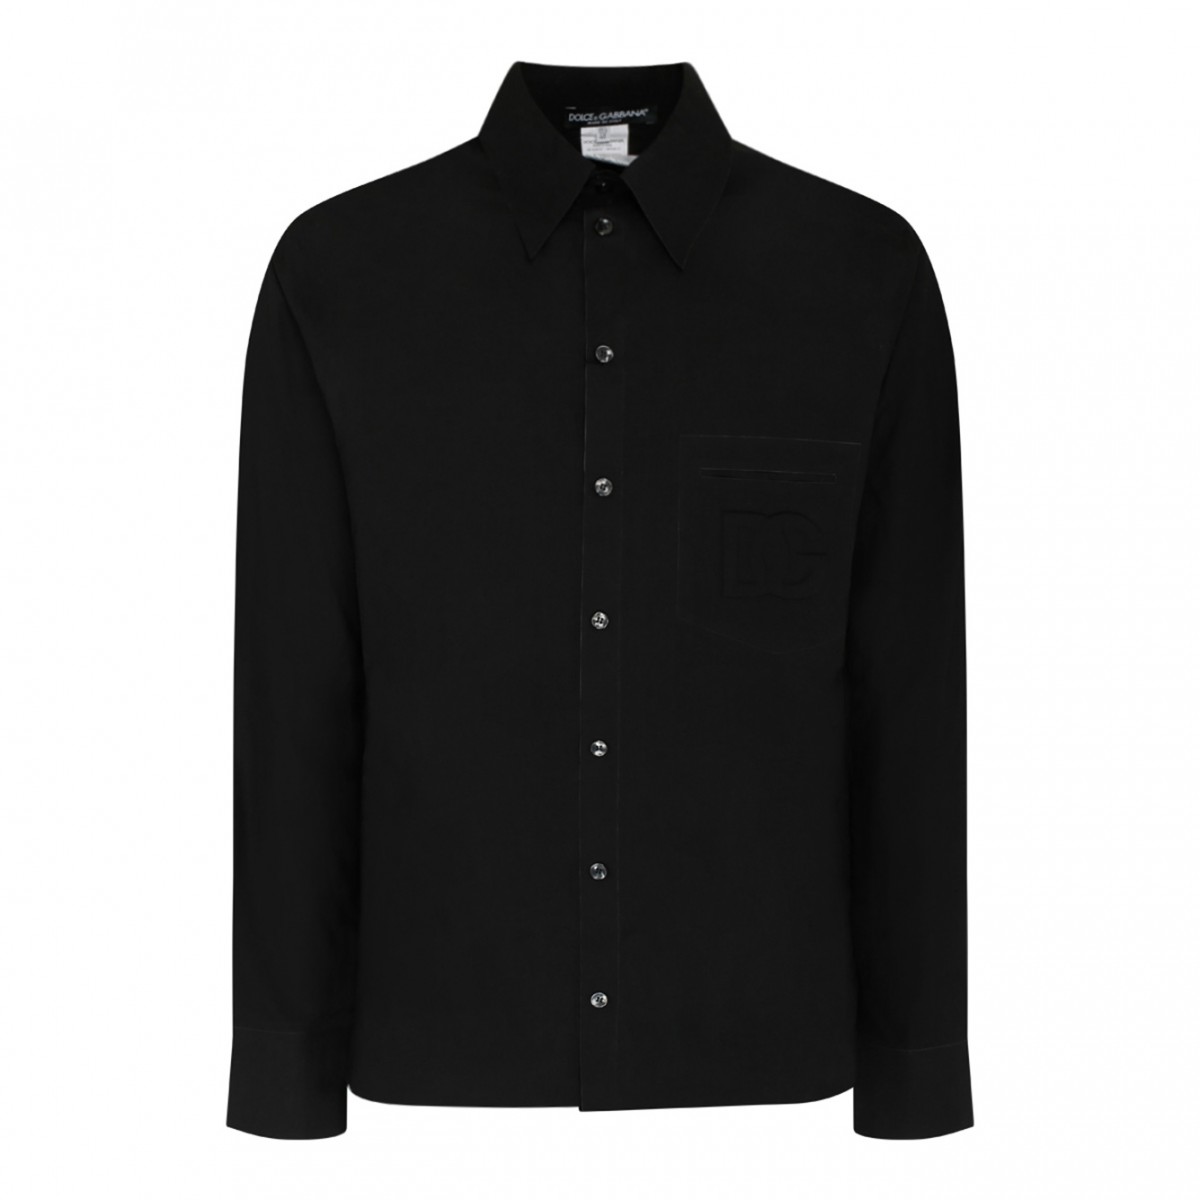 Dolce & Gabbana Black Cotton Martini Shirt.